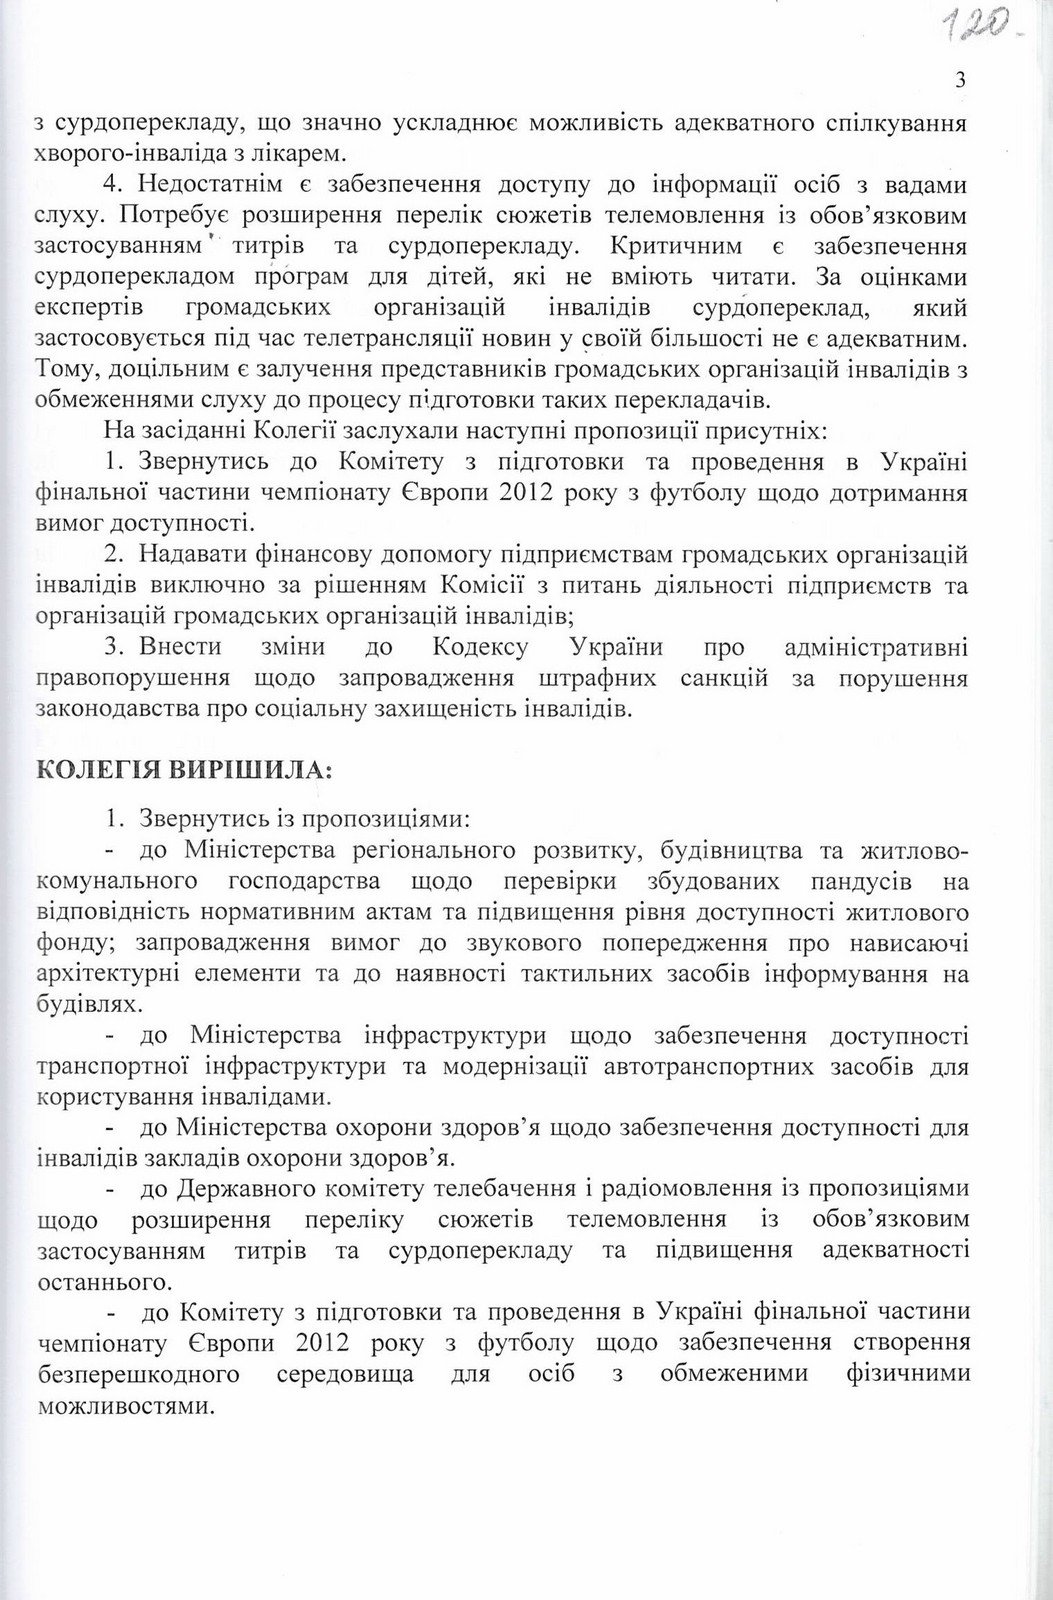 Рішення Колегії Державної служби з питань інвалідів та ветеранів України щодо розгляду моніторингу рівня доступності для людей з інвалідністю до об'єктів соціальної інфраструктури. 28 липня 2011 р.